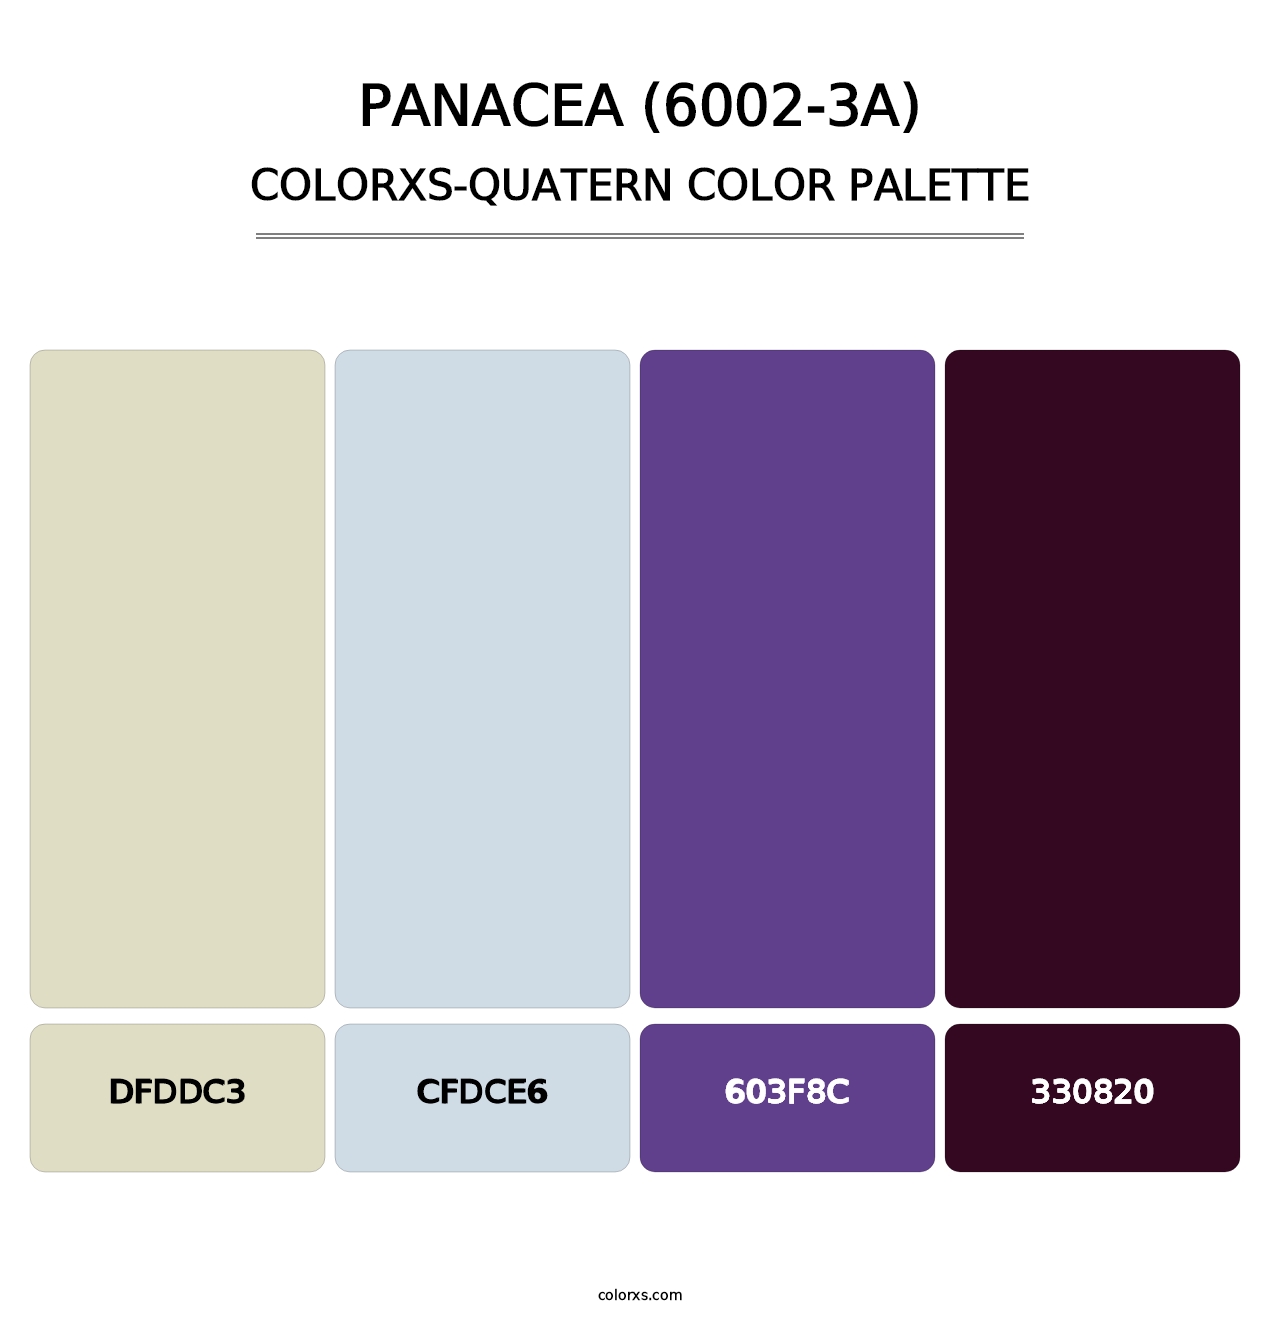 Panacea (6002-3A) - Colorxs Quatern Palette